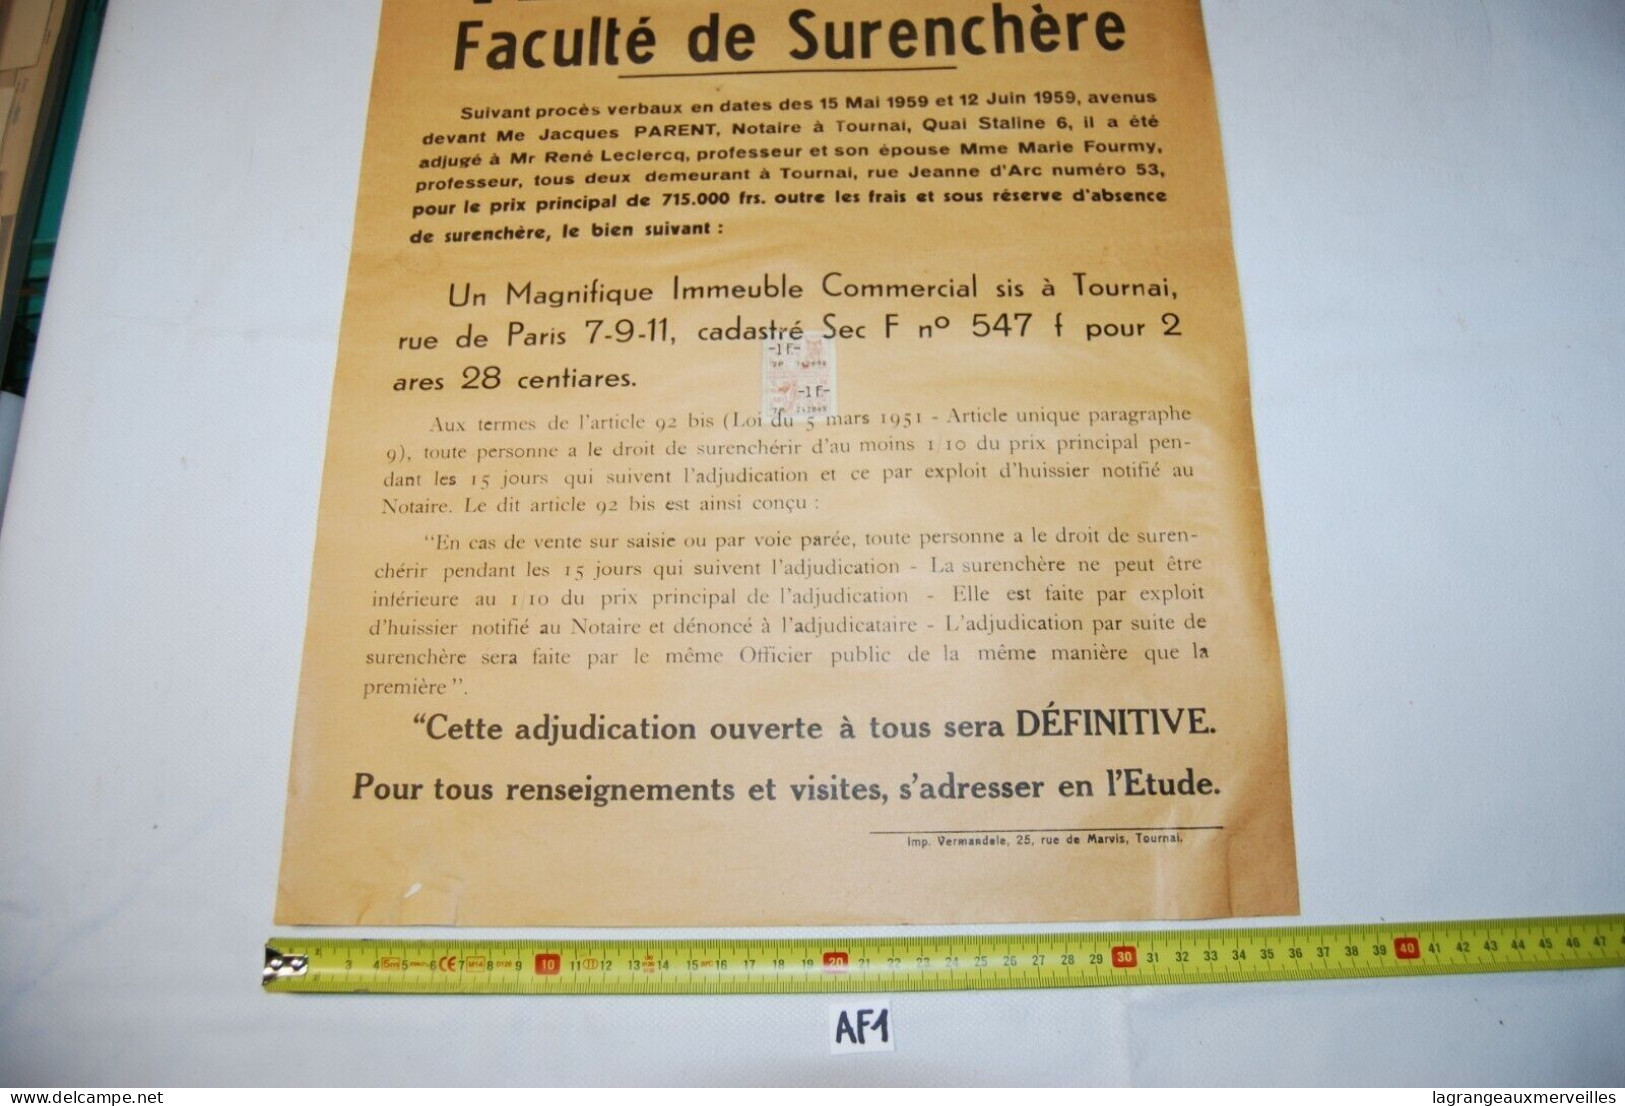 AF1 Affiche - Vente Publique Notaire - Tournai - Notaire Gérard - 1959 N°7 - Affiches